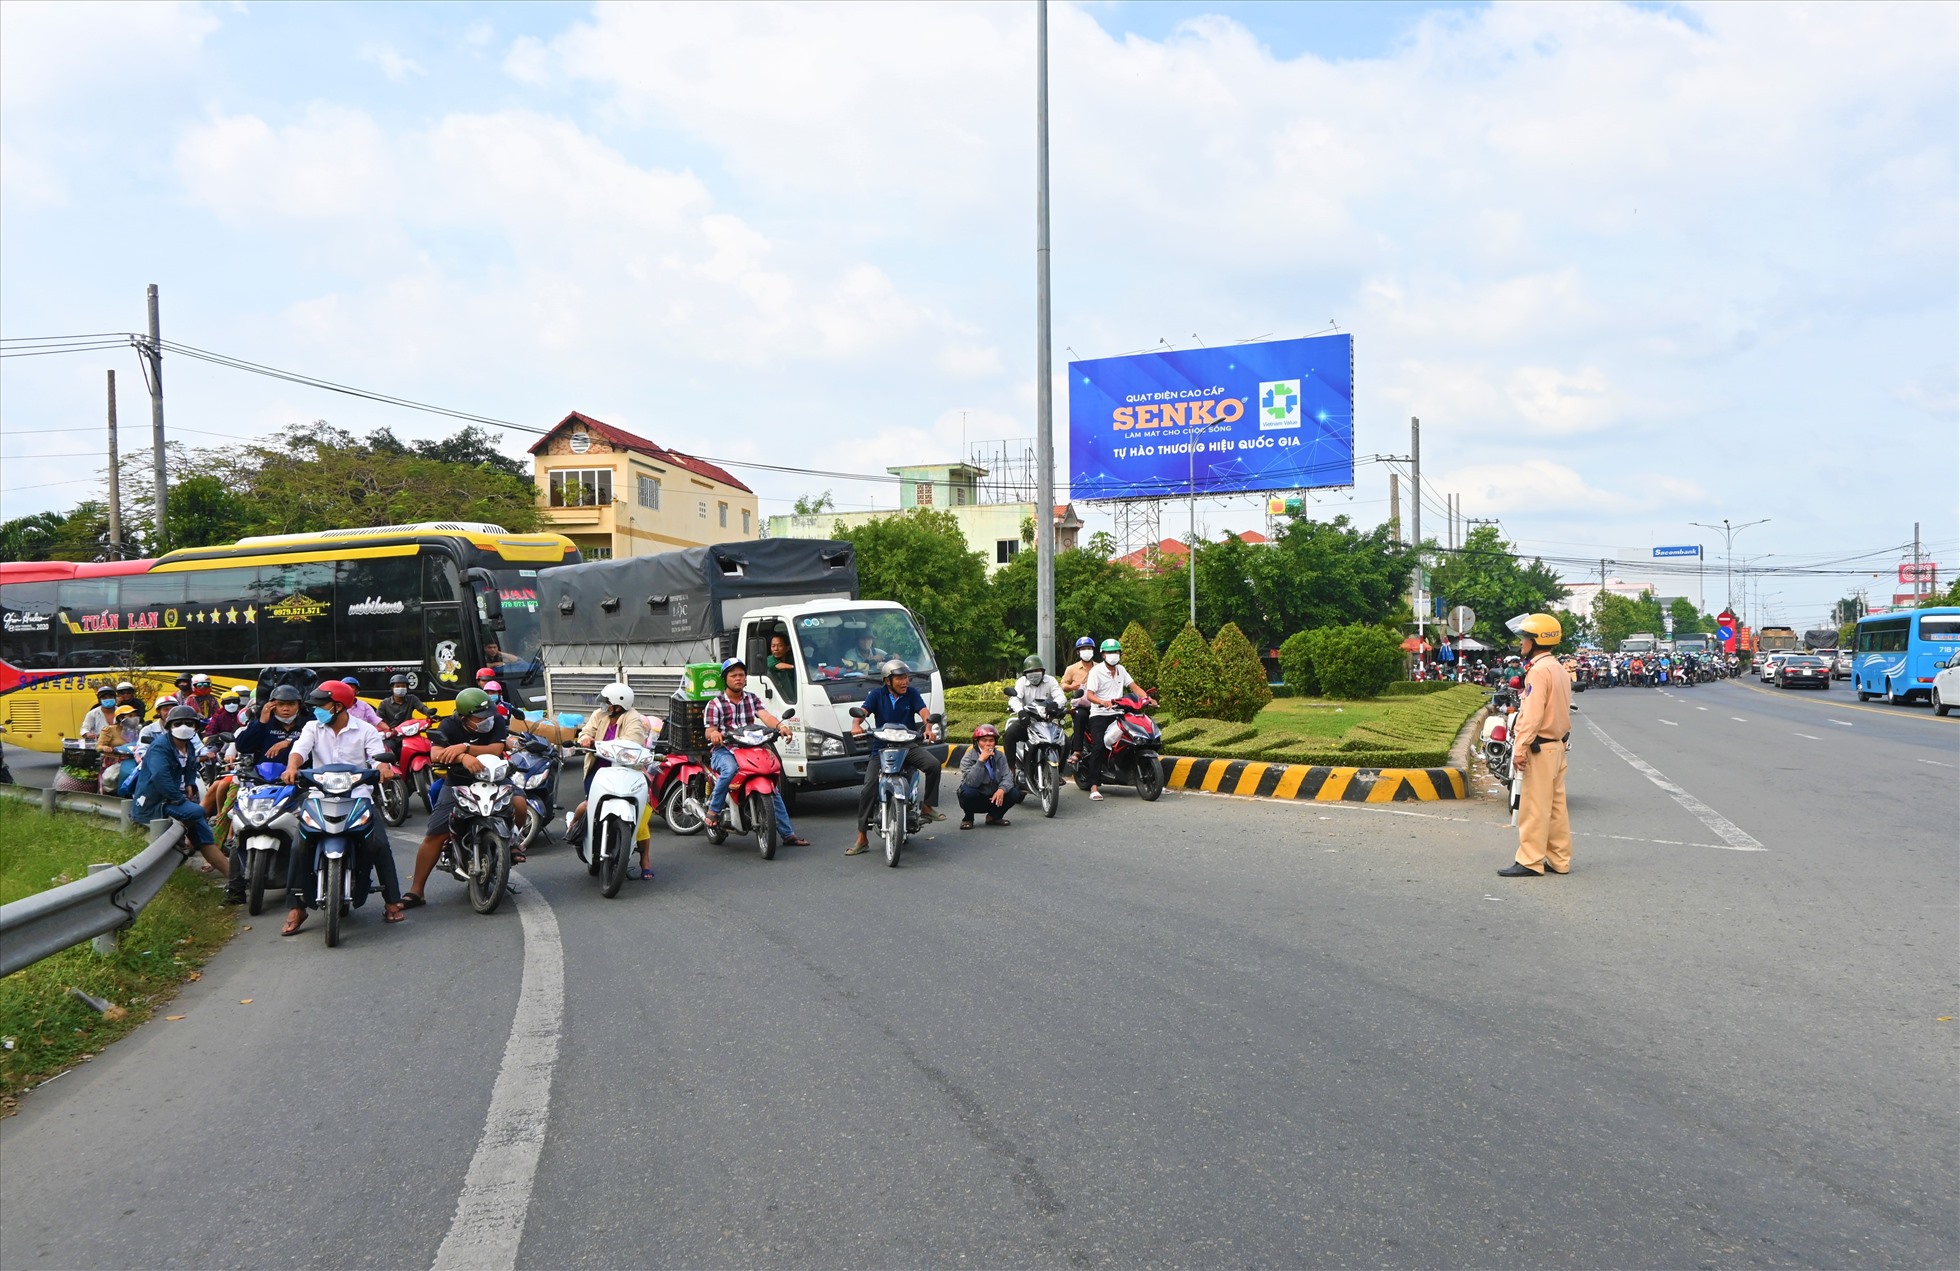 Trước tình hình này, Lực lượng Cảnh sát Giao thông của Công an tỉnh Tiền Giang đã chặn các phương tiện từ Tiền Giang đi qua Bến Tre để nhường các phương tiện từ hướng Bến Tre di chuyển để giảm ùn tắc giao thông bên phía bờ Bến Tre.